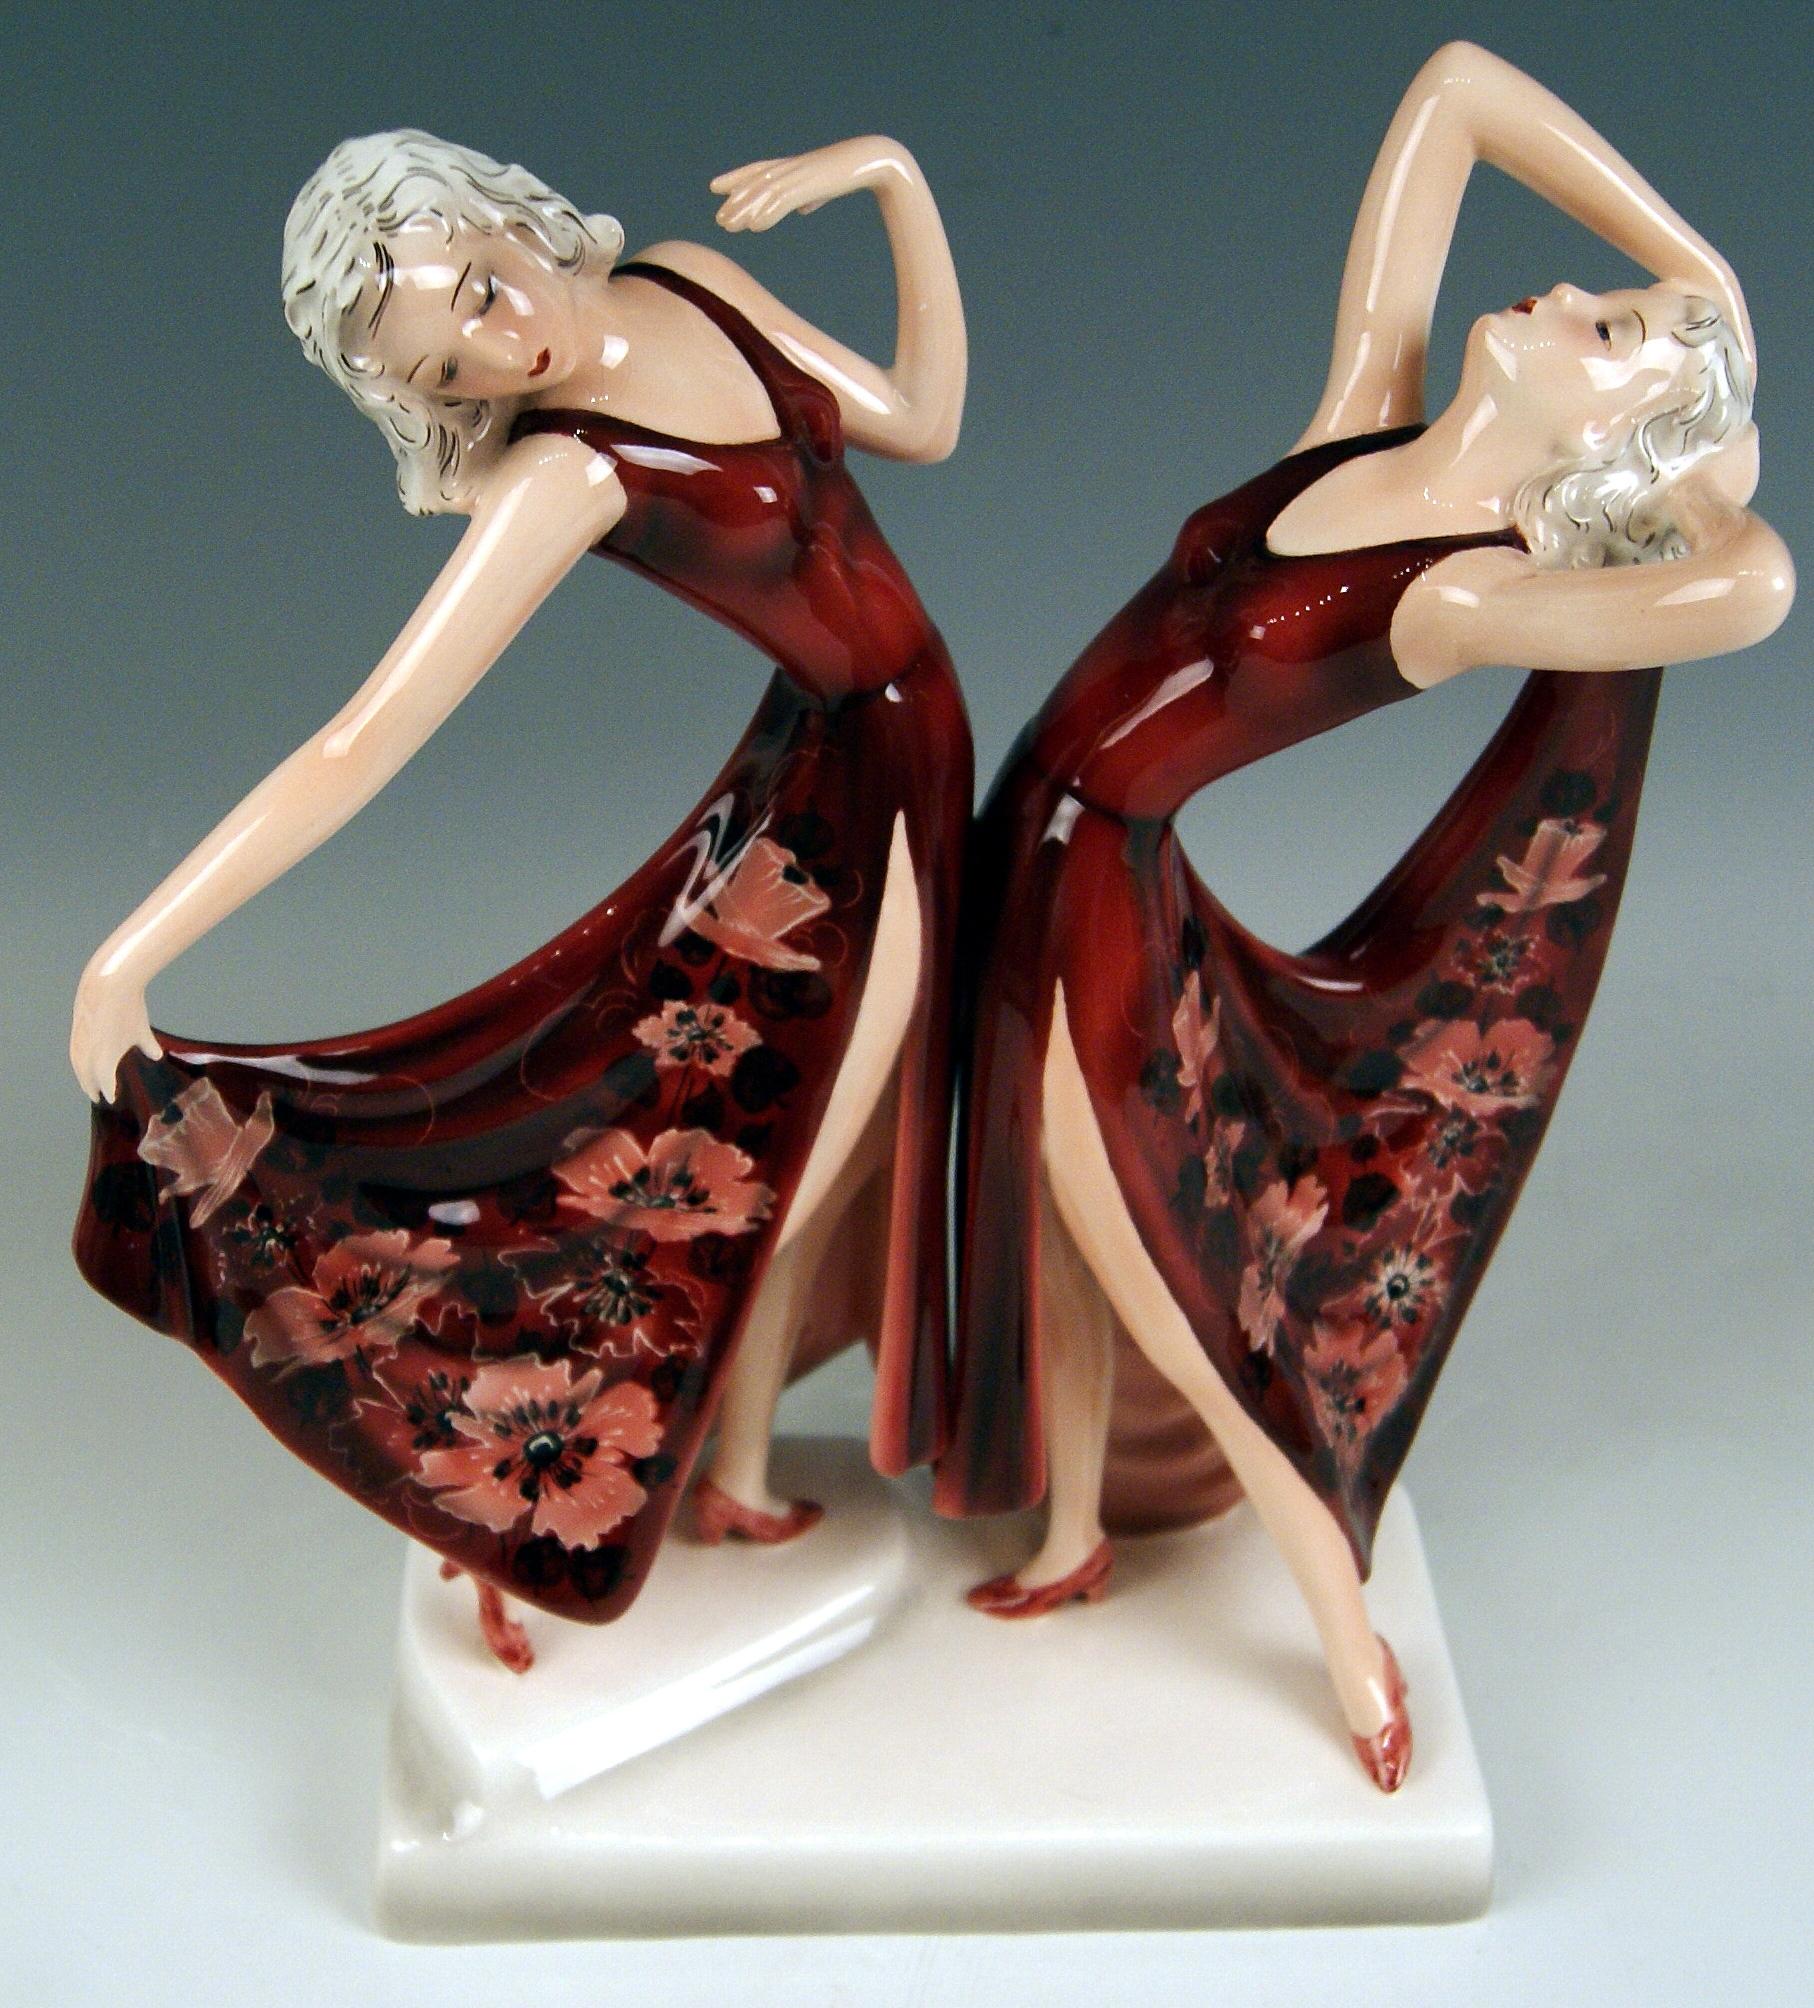 Austrian Goldscheider Vienna Schuster Dolly Twins Two Figurines Model 7868 by Dakon 1942